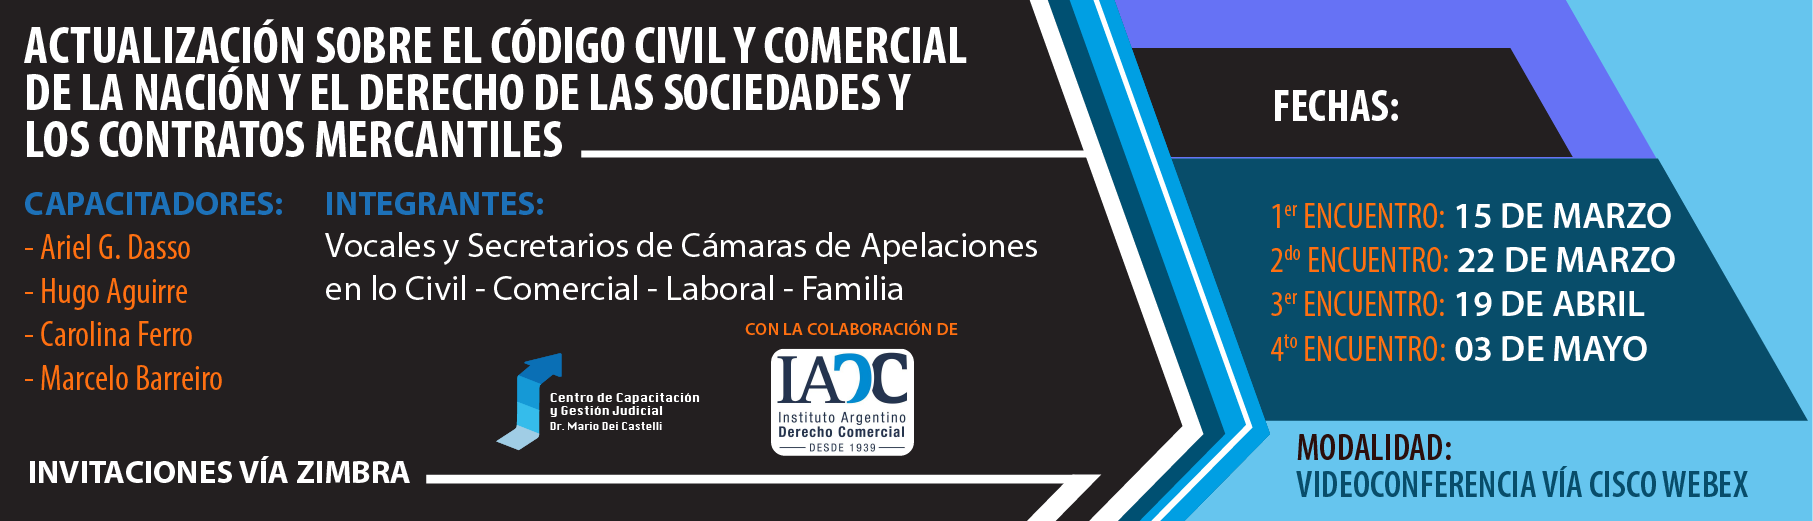 Actualización sobre el Código Civil y Comercial de la Nación y el derecho de las sociedades y los contratos mercantiles